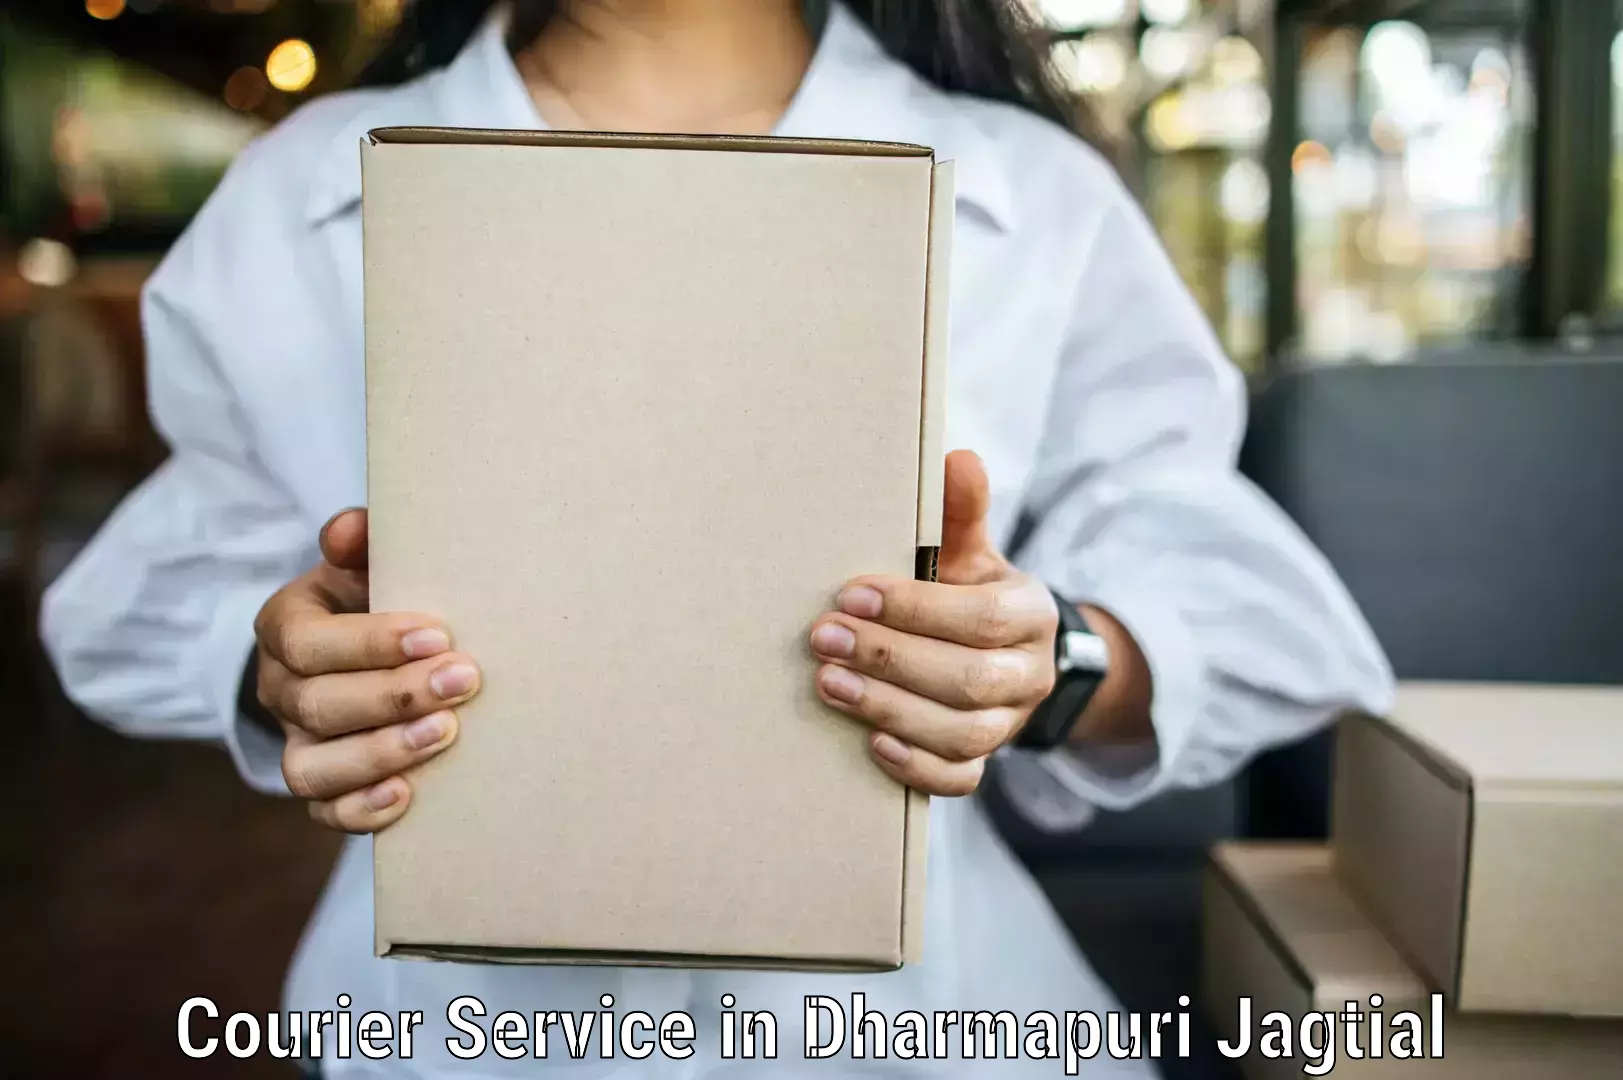 Efficient package consolidation in Dharmapuri Jagtial